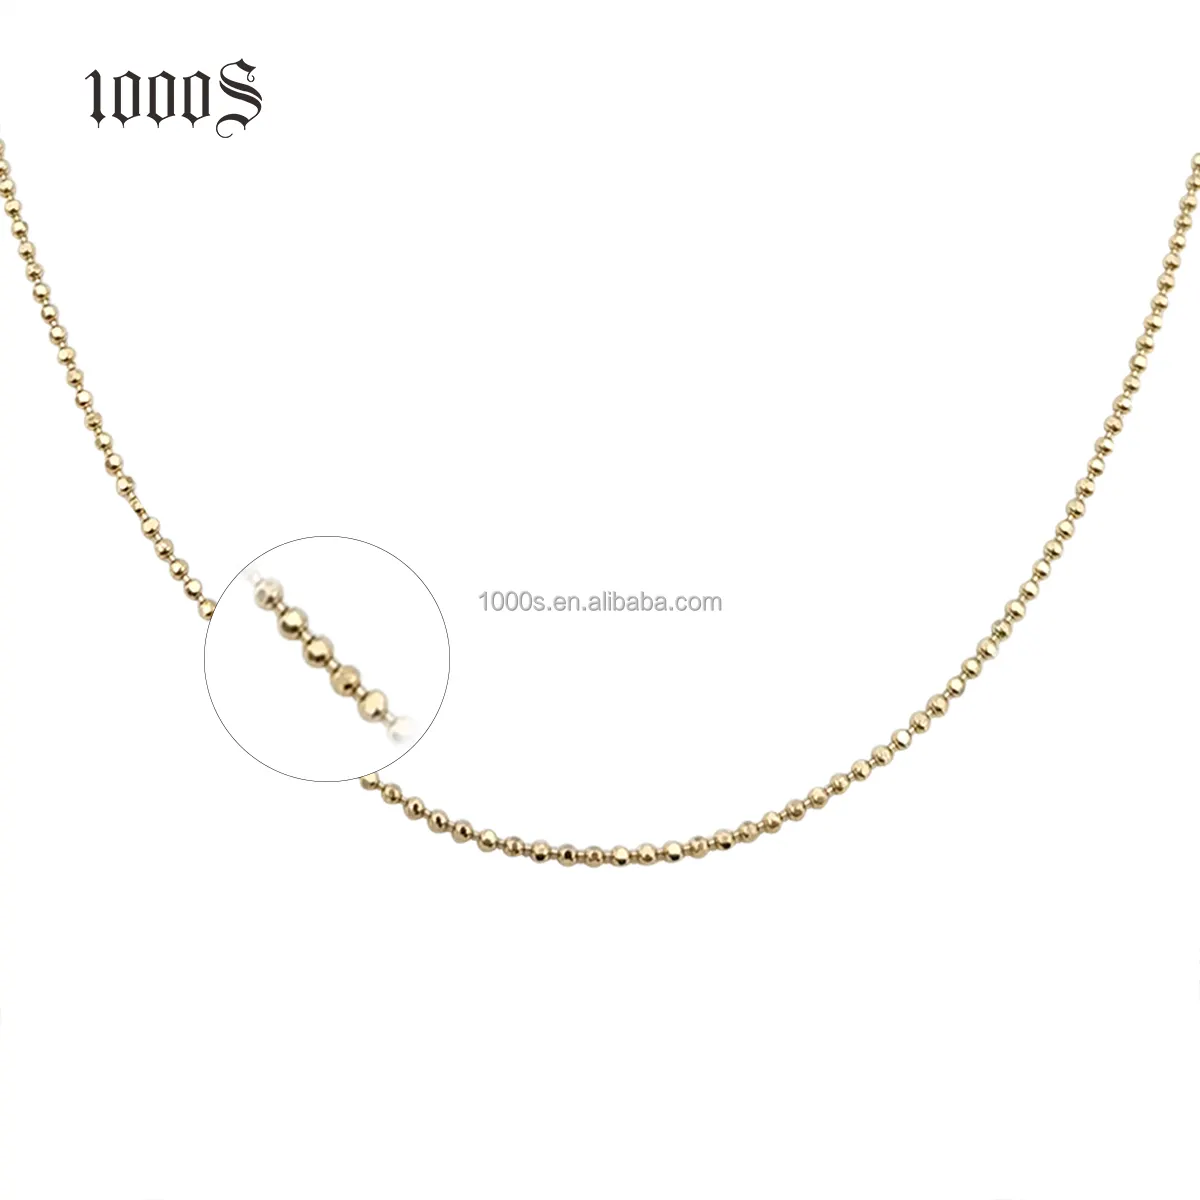 Collar de cadena de bolas de oro amarillo de 14K para hombre y mujer, joyería de oro de 18k y 9k personalizada